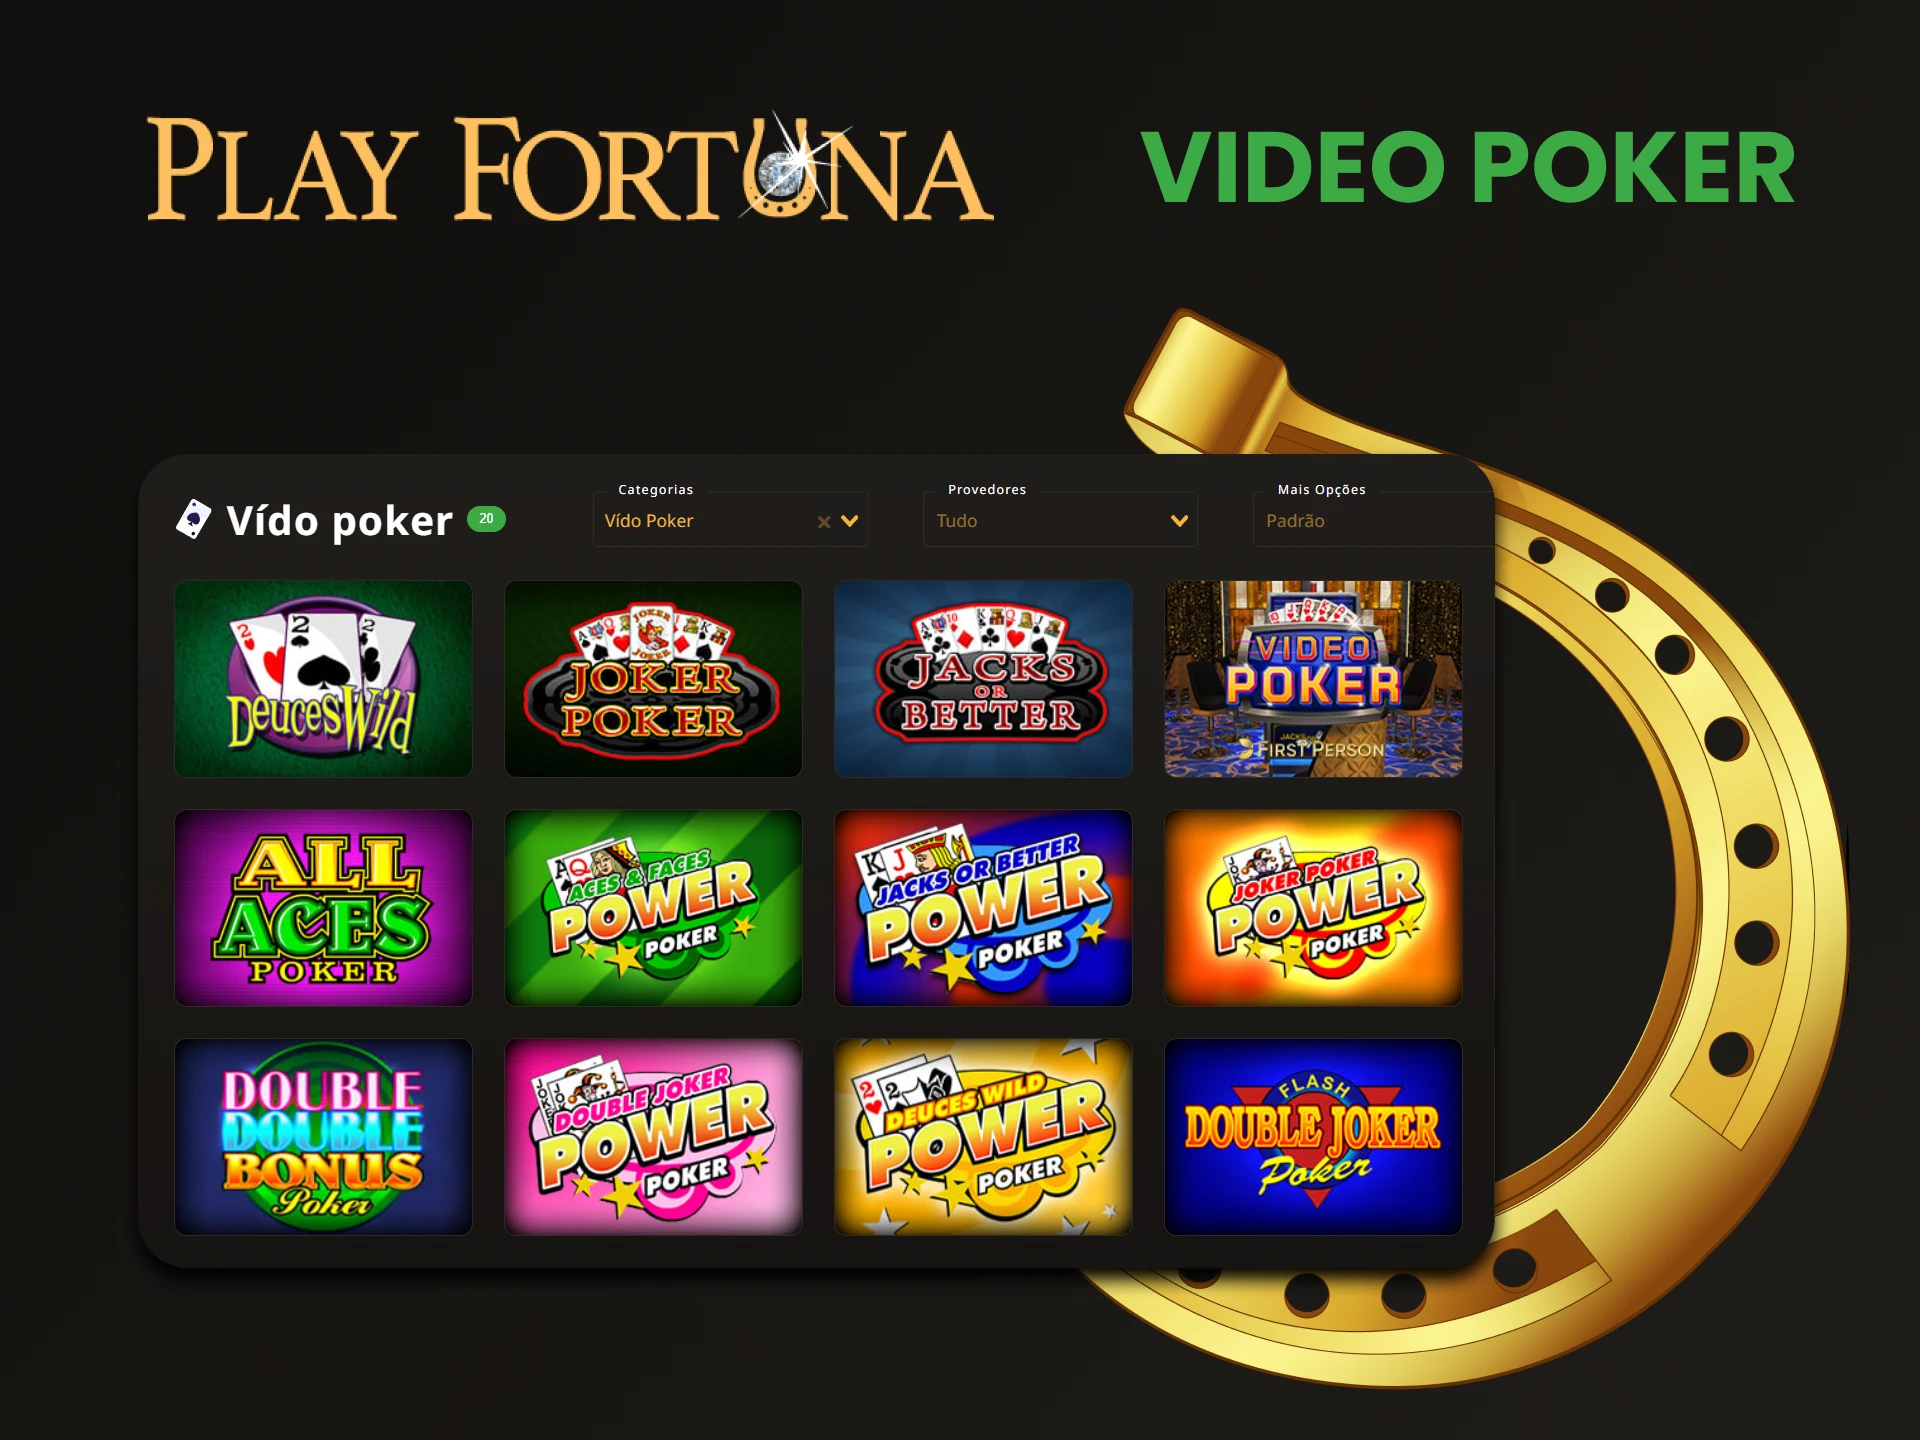 Jogue vídeo pôquer no site Play Fortuna.